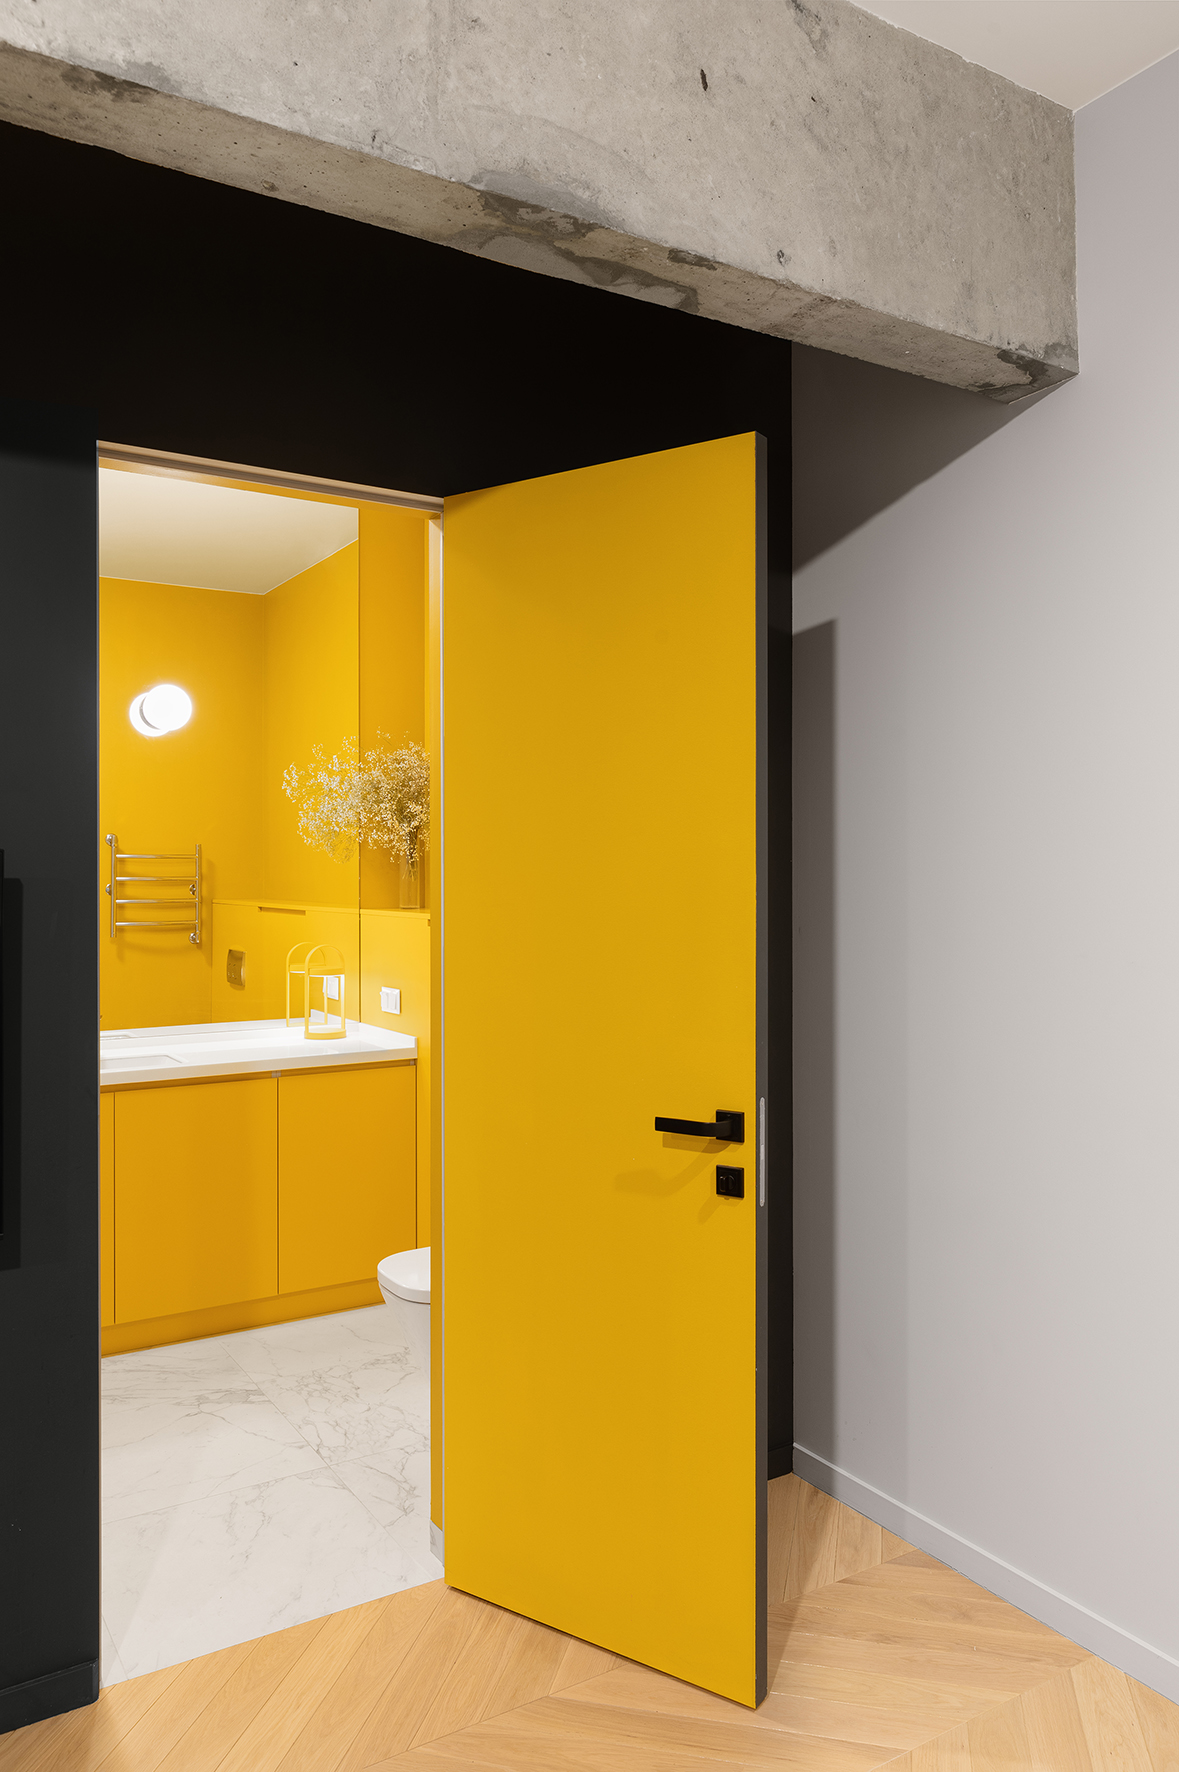 Thật bất ngờ khi đằng sau bức tường toàn màu đen là cánh cửa dẫn lối vào phòng tắm rực sáng với sắc vàng chiếm lĩnh từ mặt trong cánh cửa, tường cho đến tủ vanity.